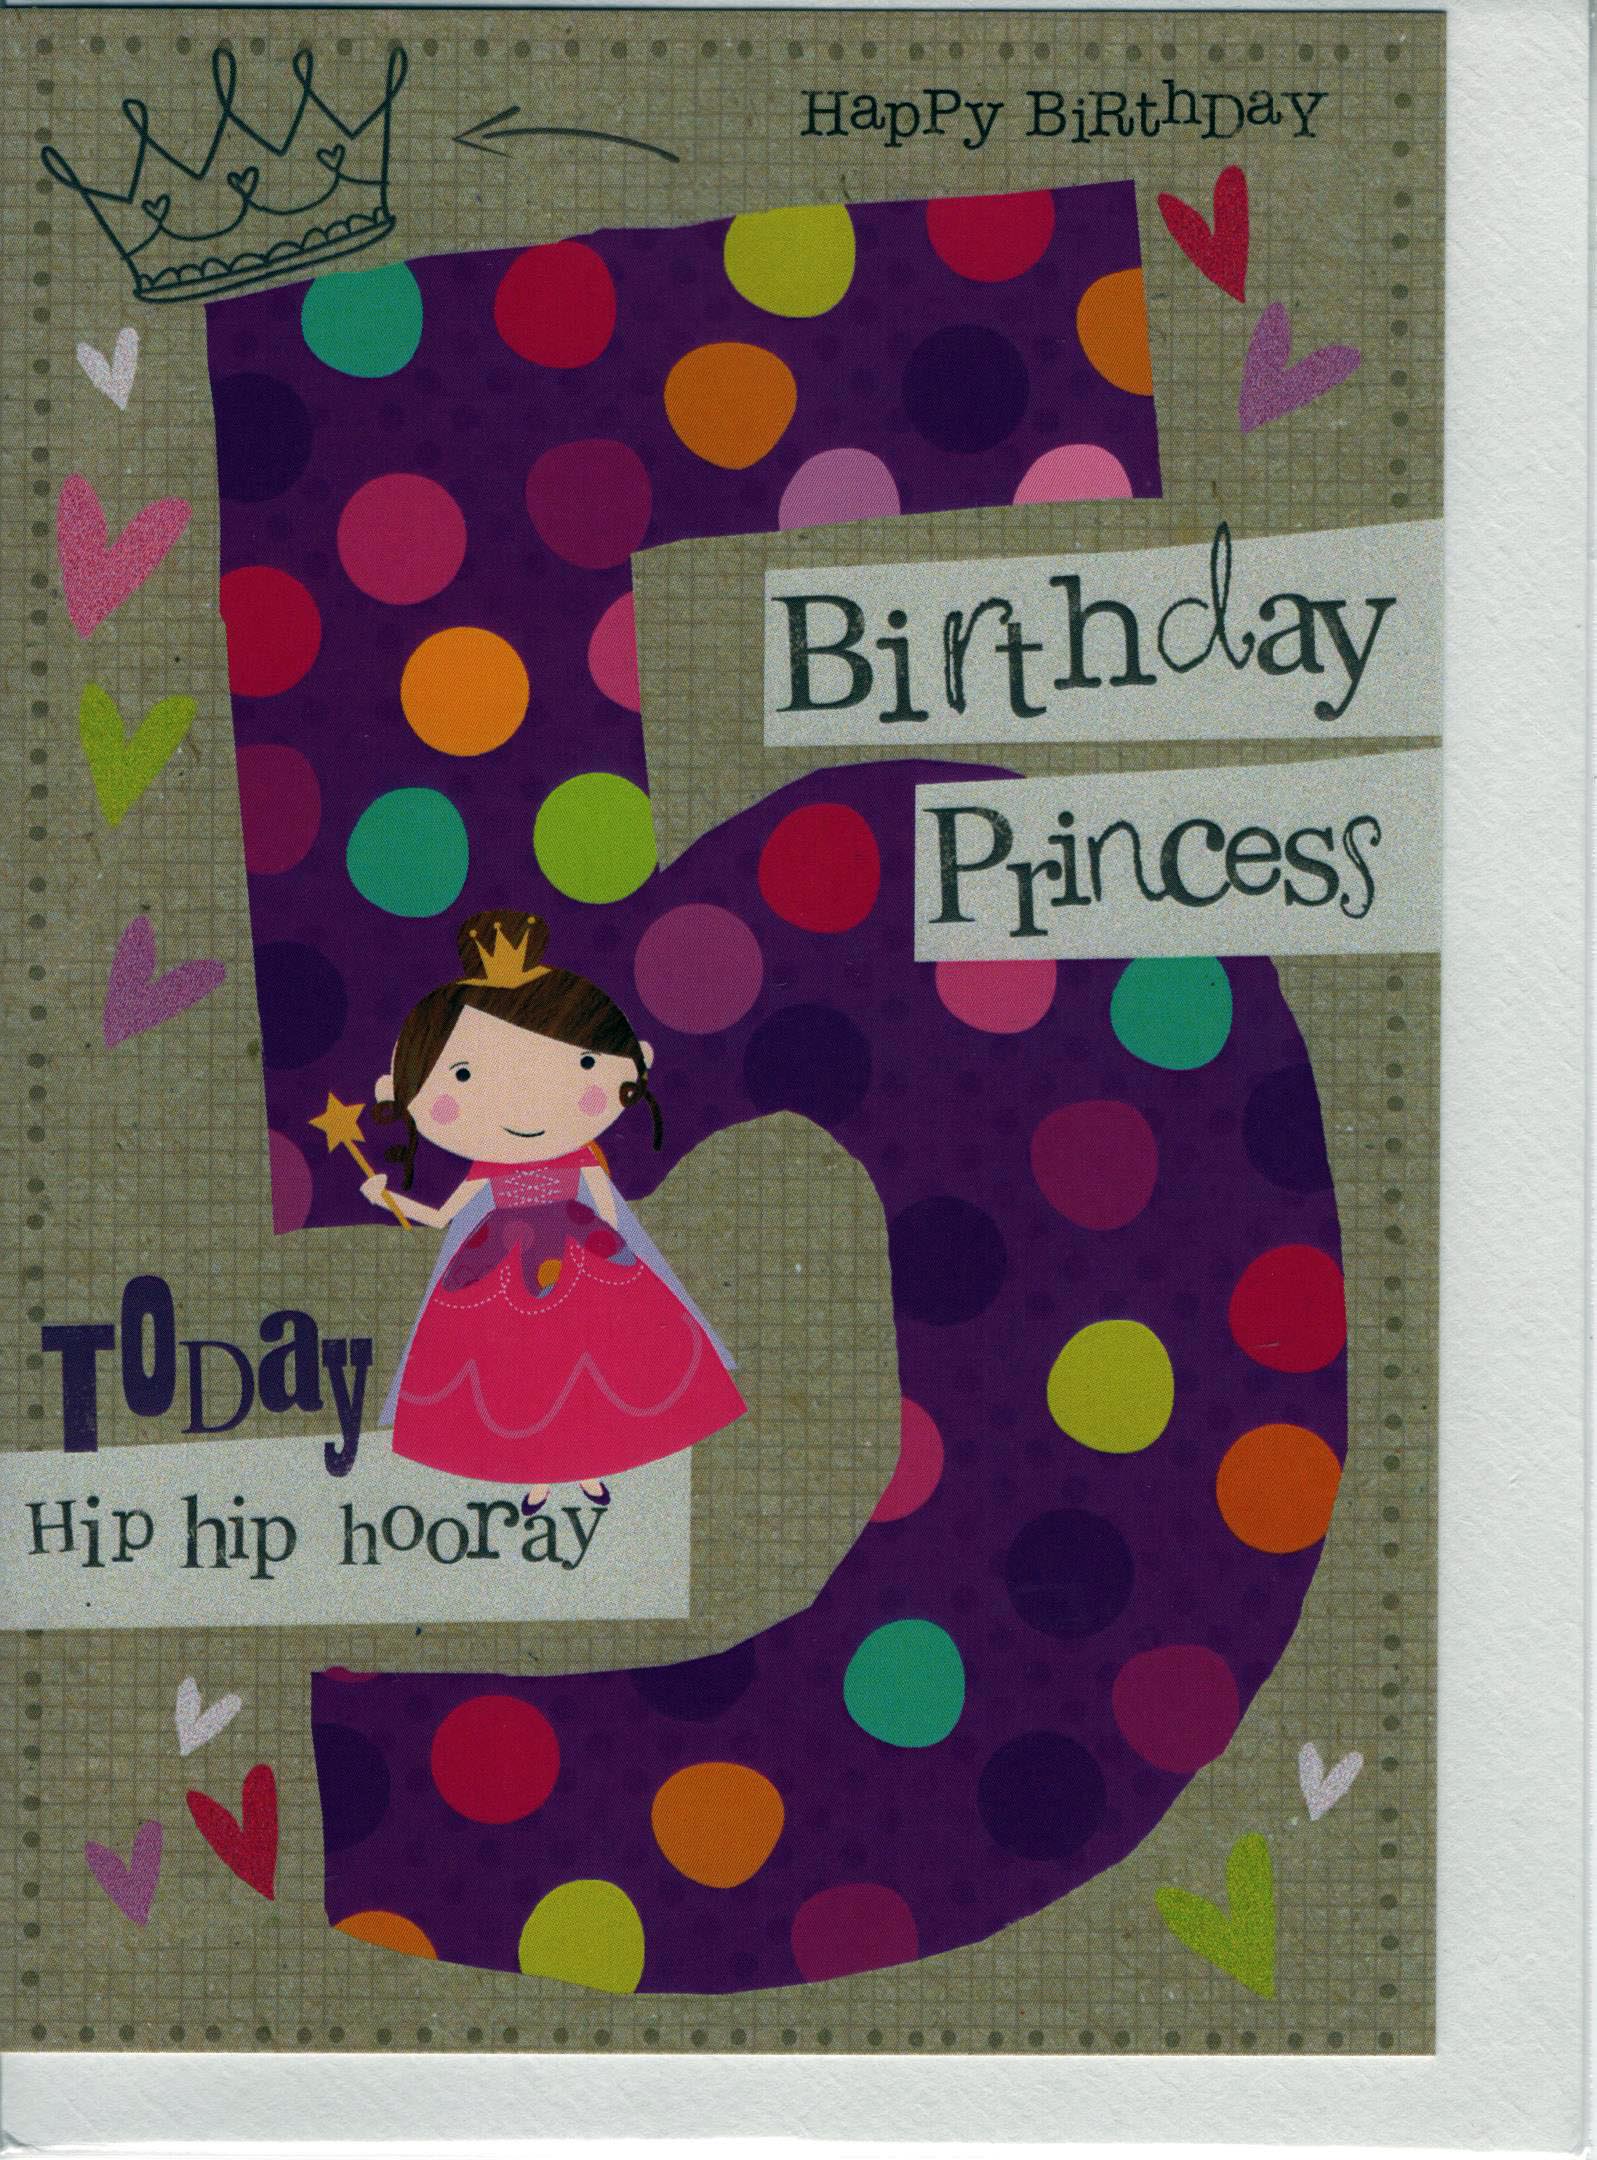 Birthday Princess 5 today hip hip hooray